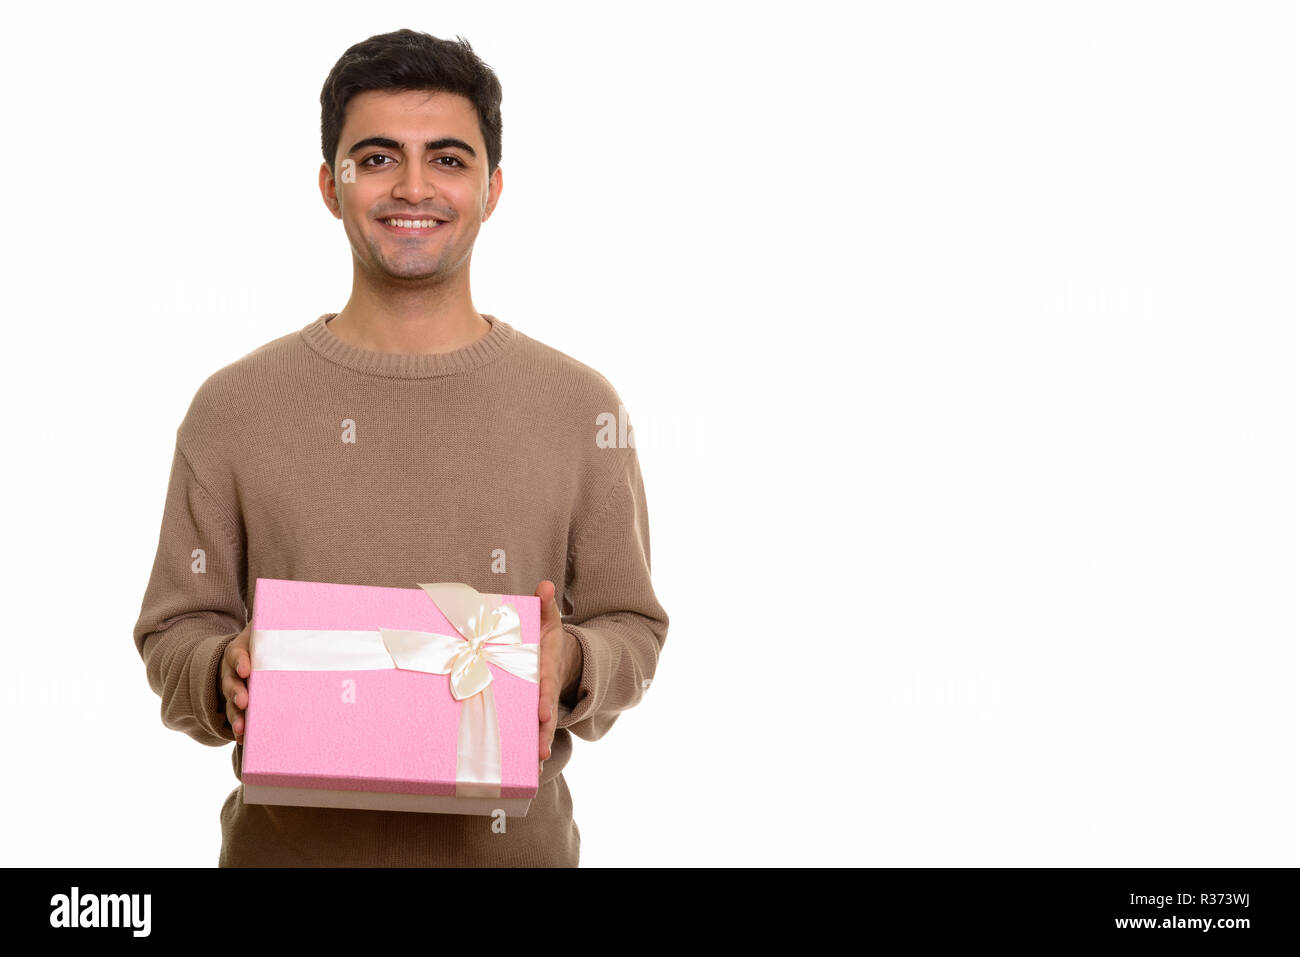 Les jeunes professionnels Persian man holding gift box prêt pour la Saint Valentin de d Banque D'Images